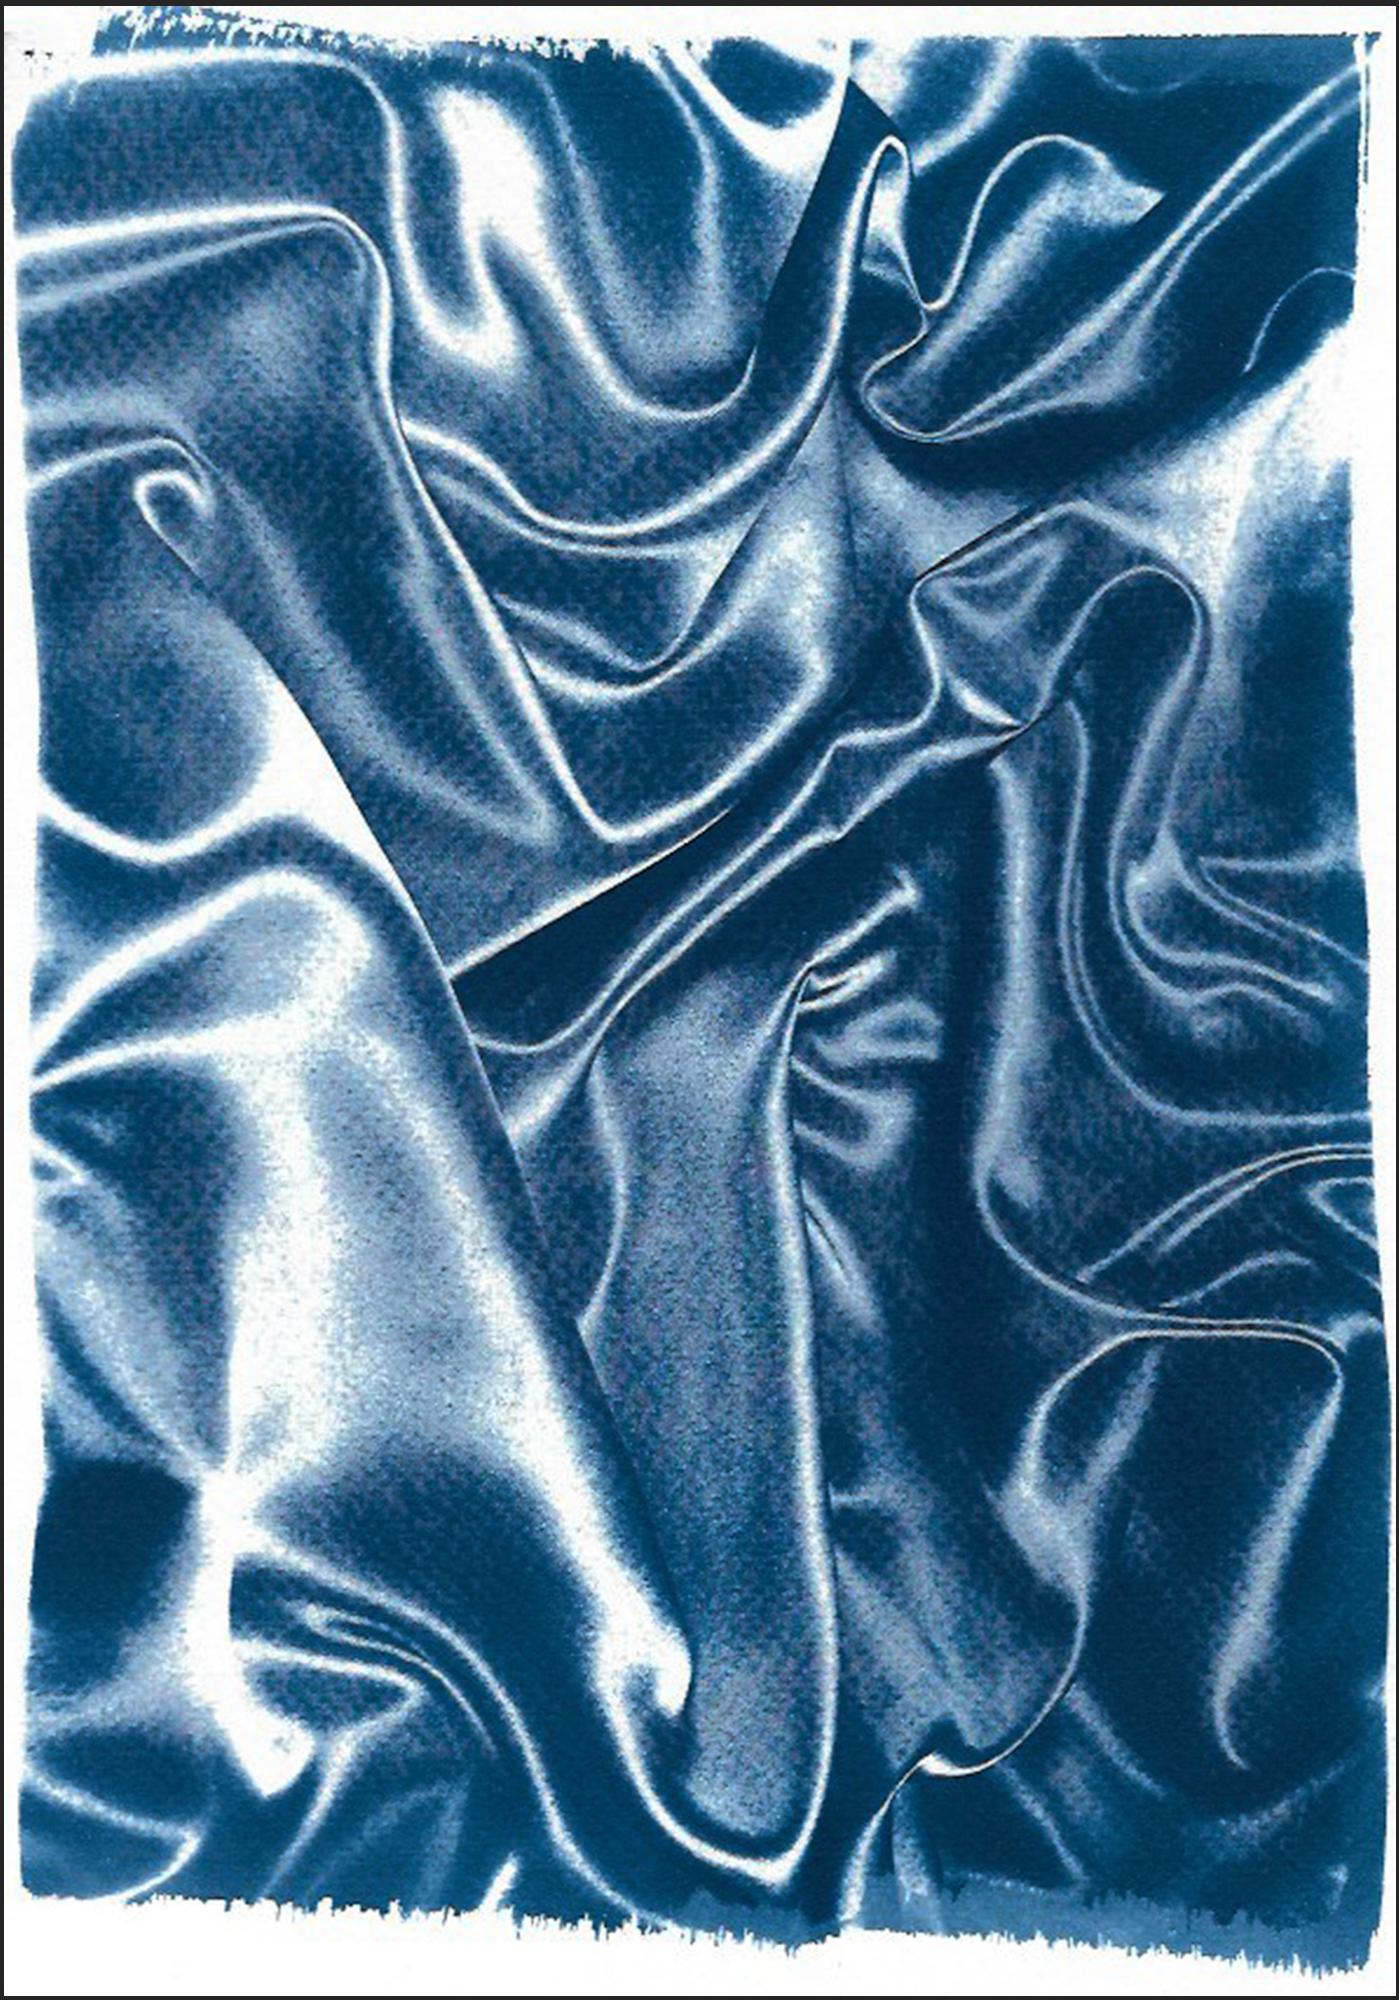 Mouvement classique de la soie bleue, gestes abstraits en tissu, cyanotype contemporain 